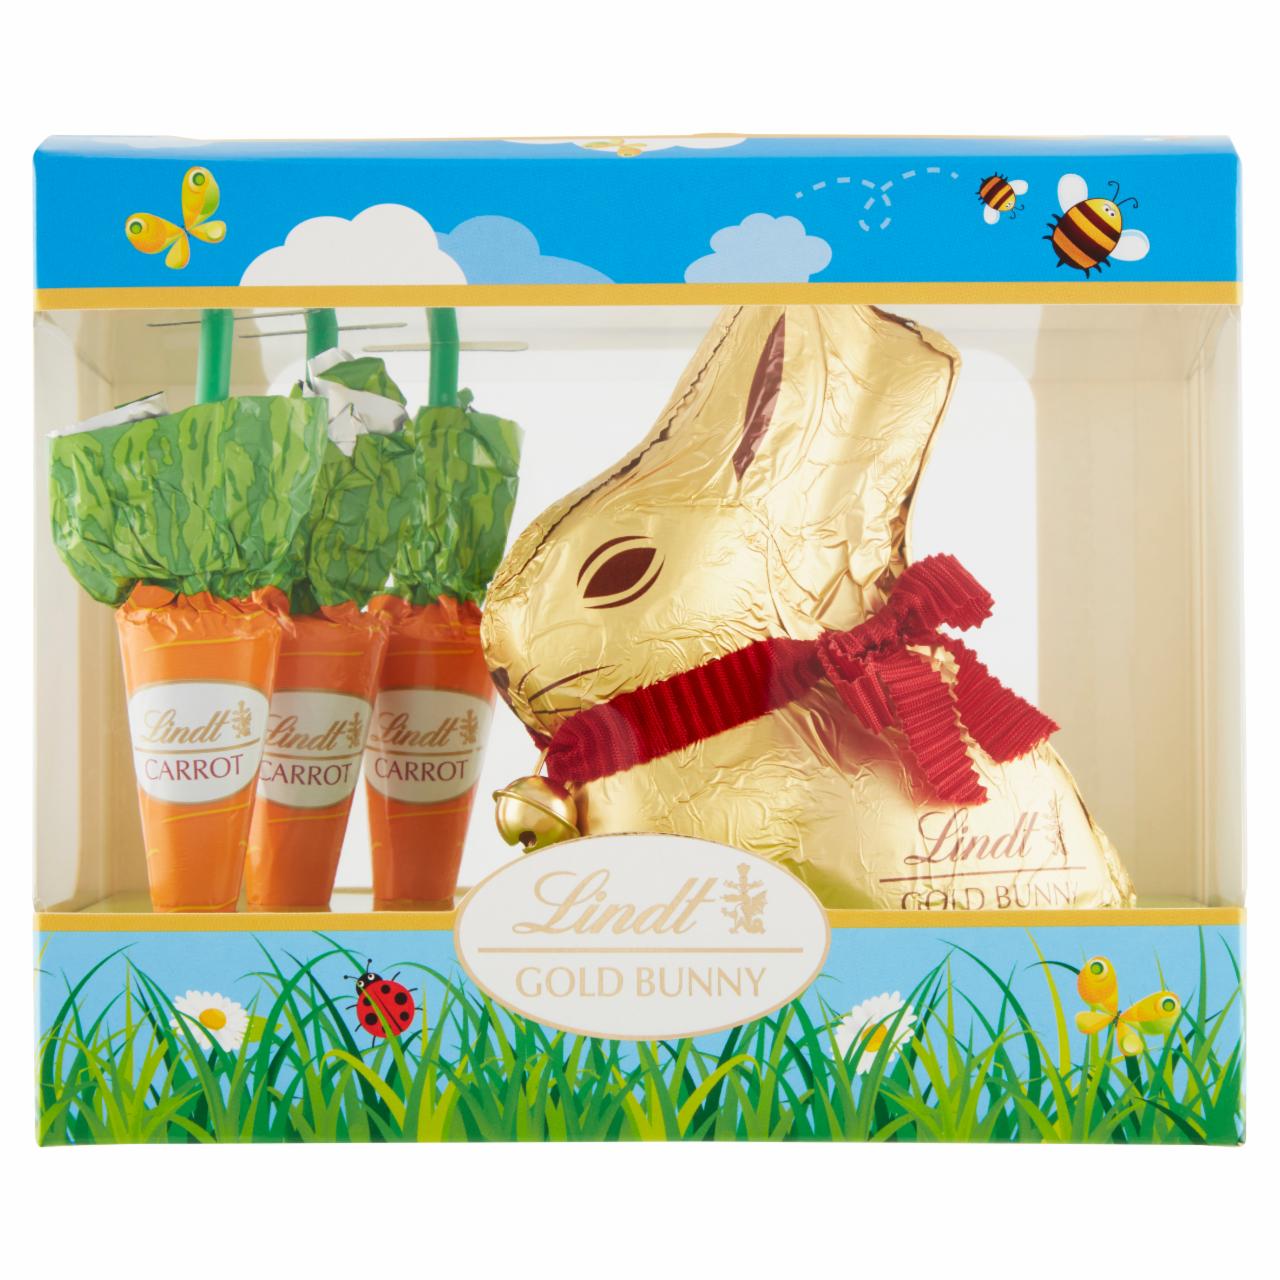 Képek - Lindt Gold Bunny alpesi tejcsokoládé, répafigurák tejcsokoládéból 140,5 g